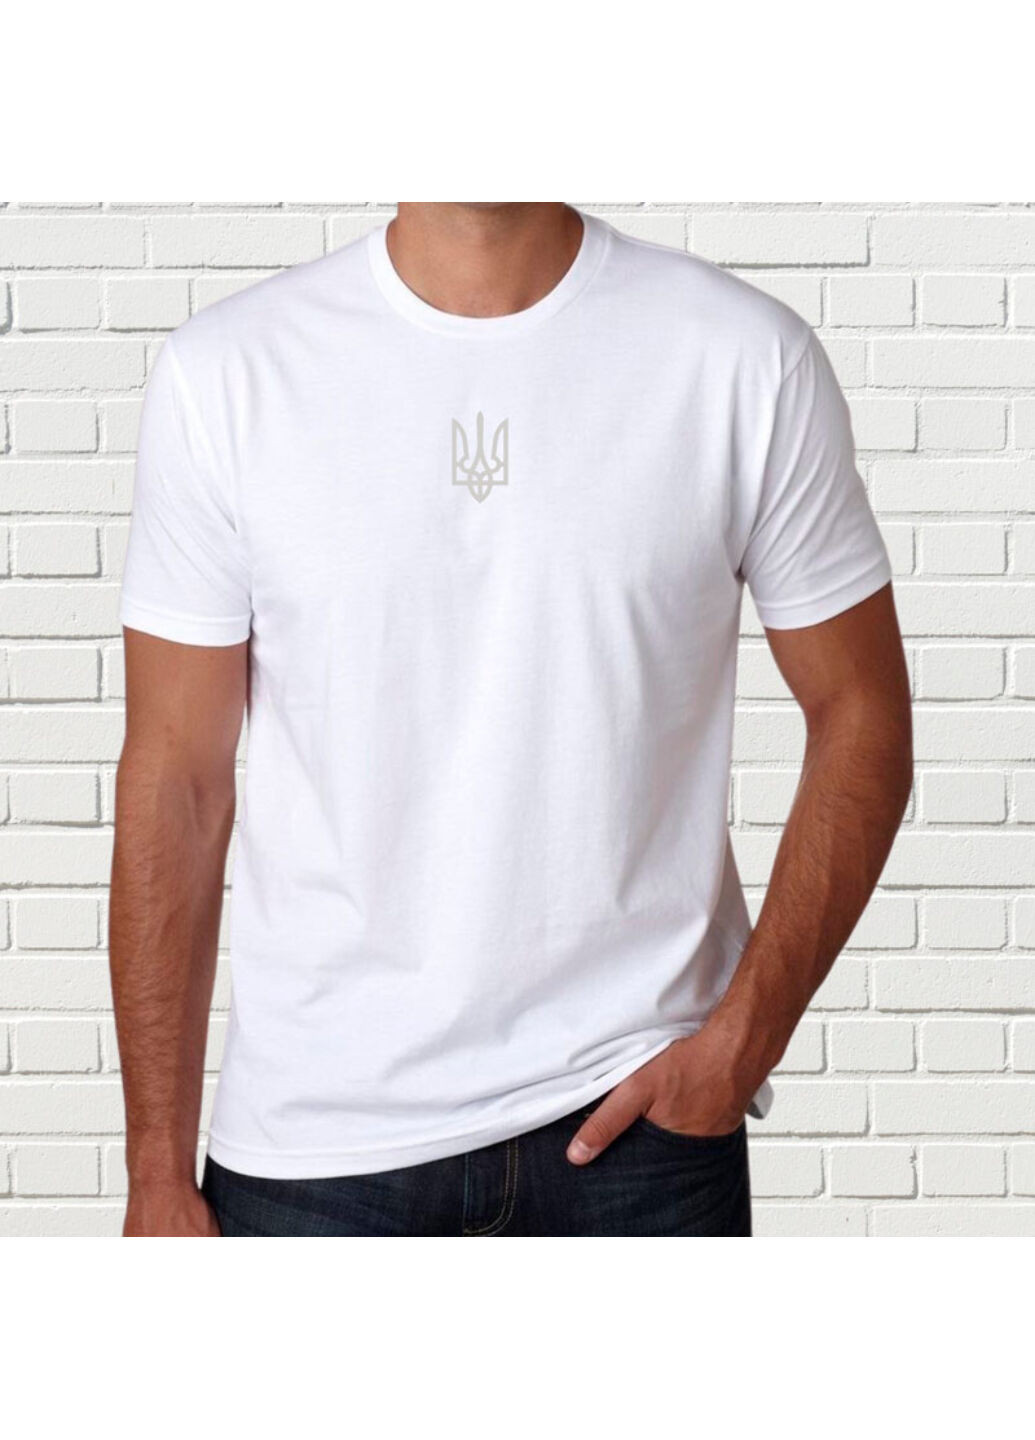 Белая футболка с белой вышивкой украина мужская белый l No Brand